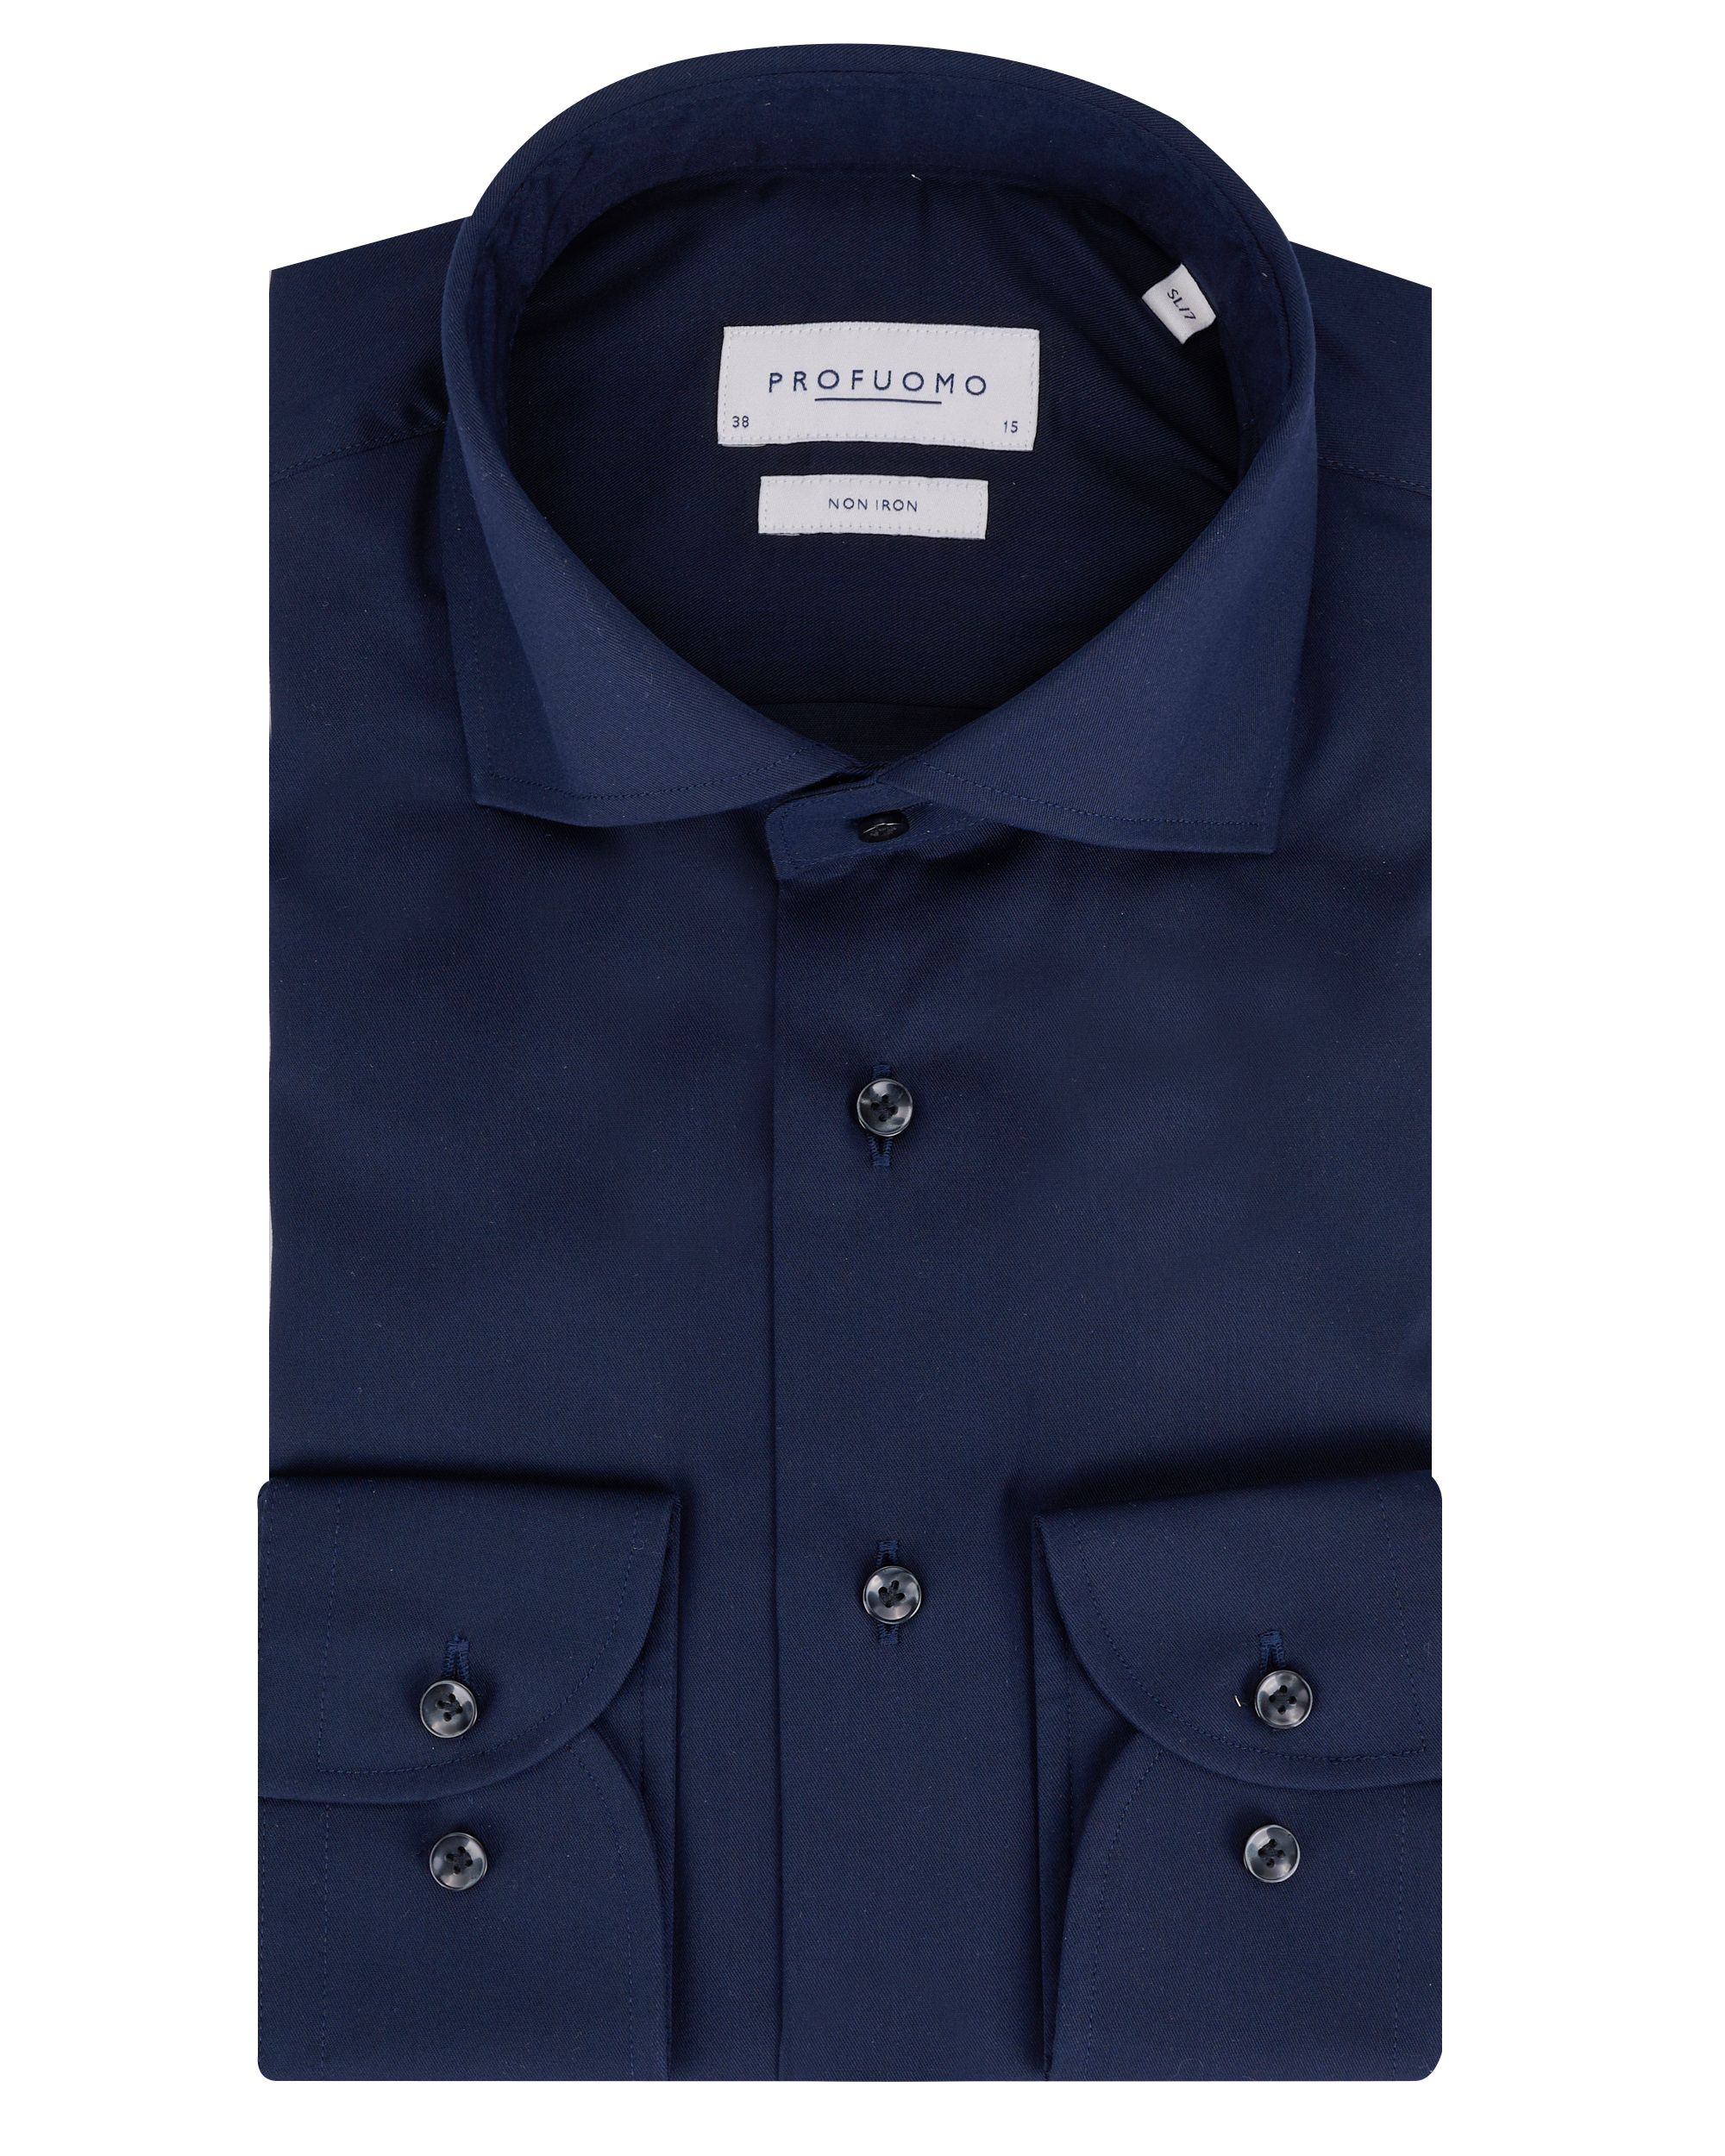 Profuomo Originale Slim fit Overhemd Extra LM Blauw 064526-001-39